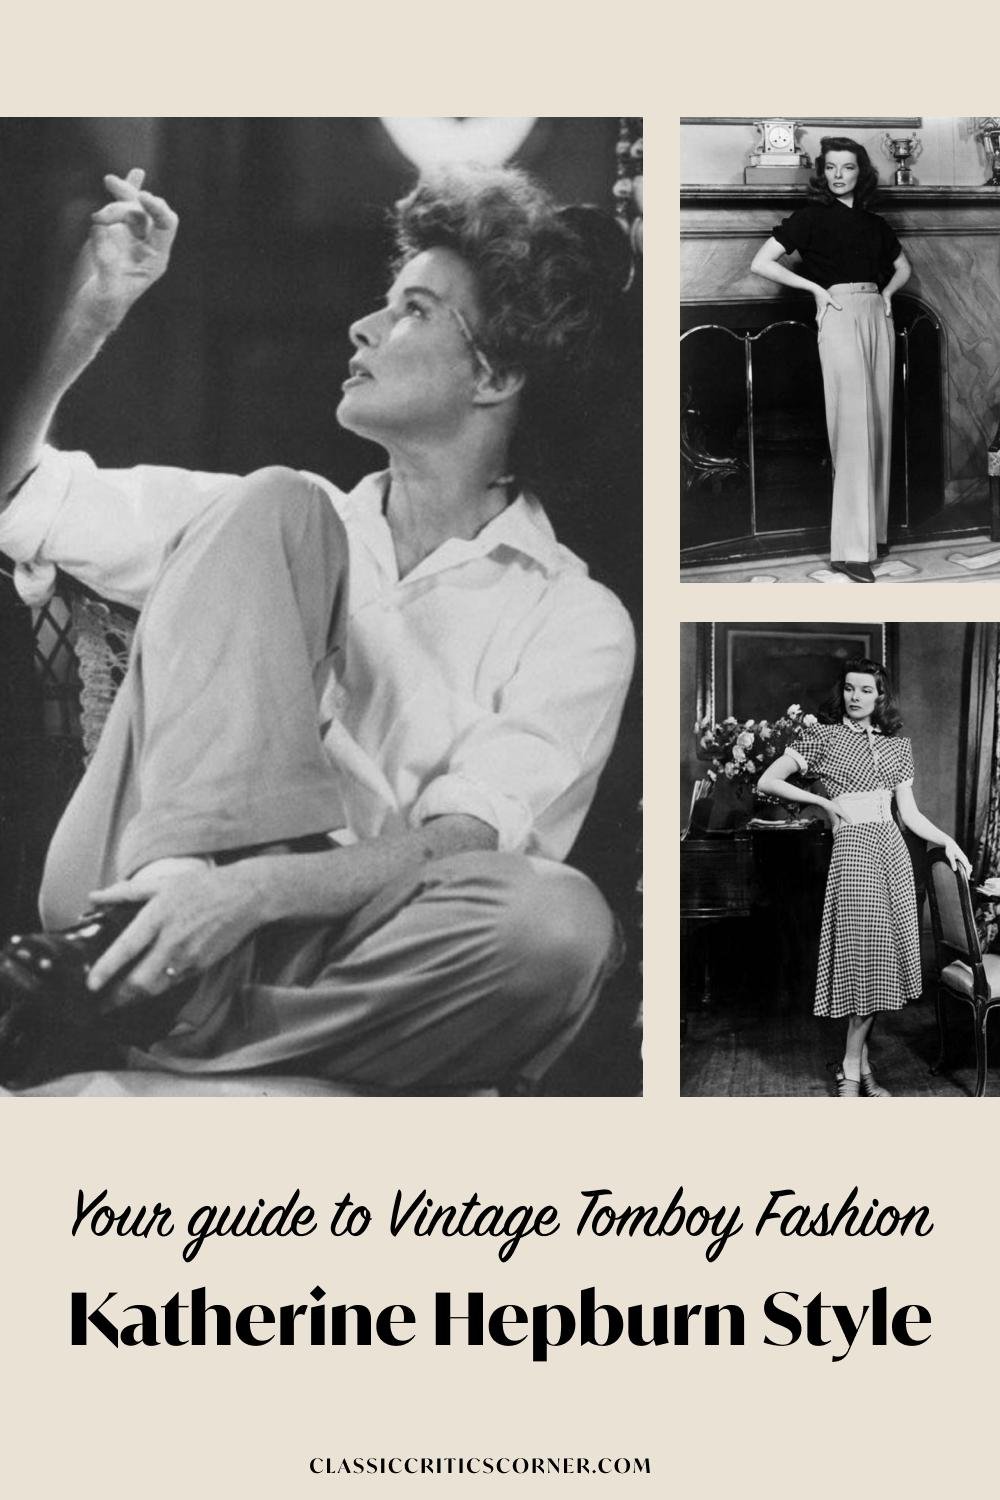 Katharine Hepburn Style - Her Bold Vintage Tomboy Fashion